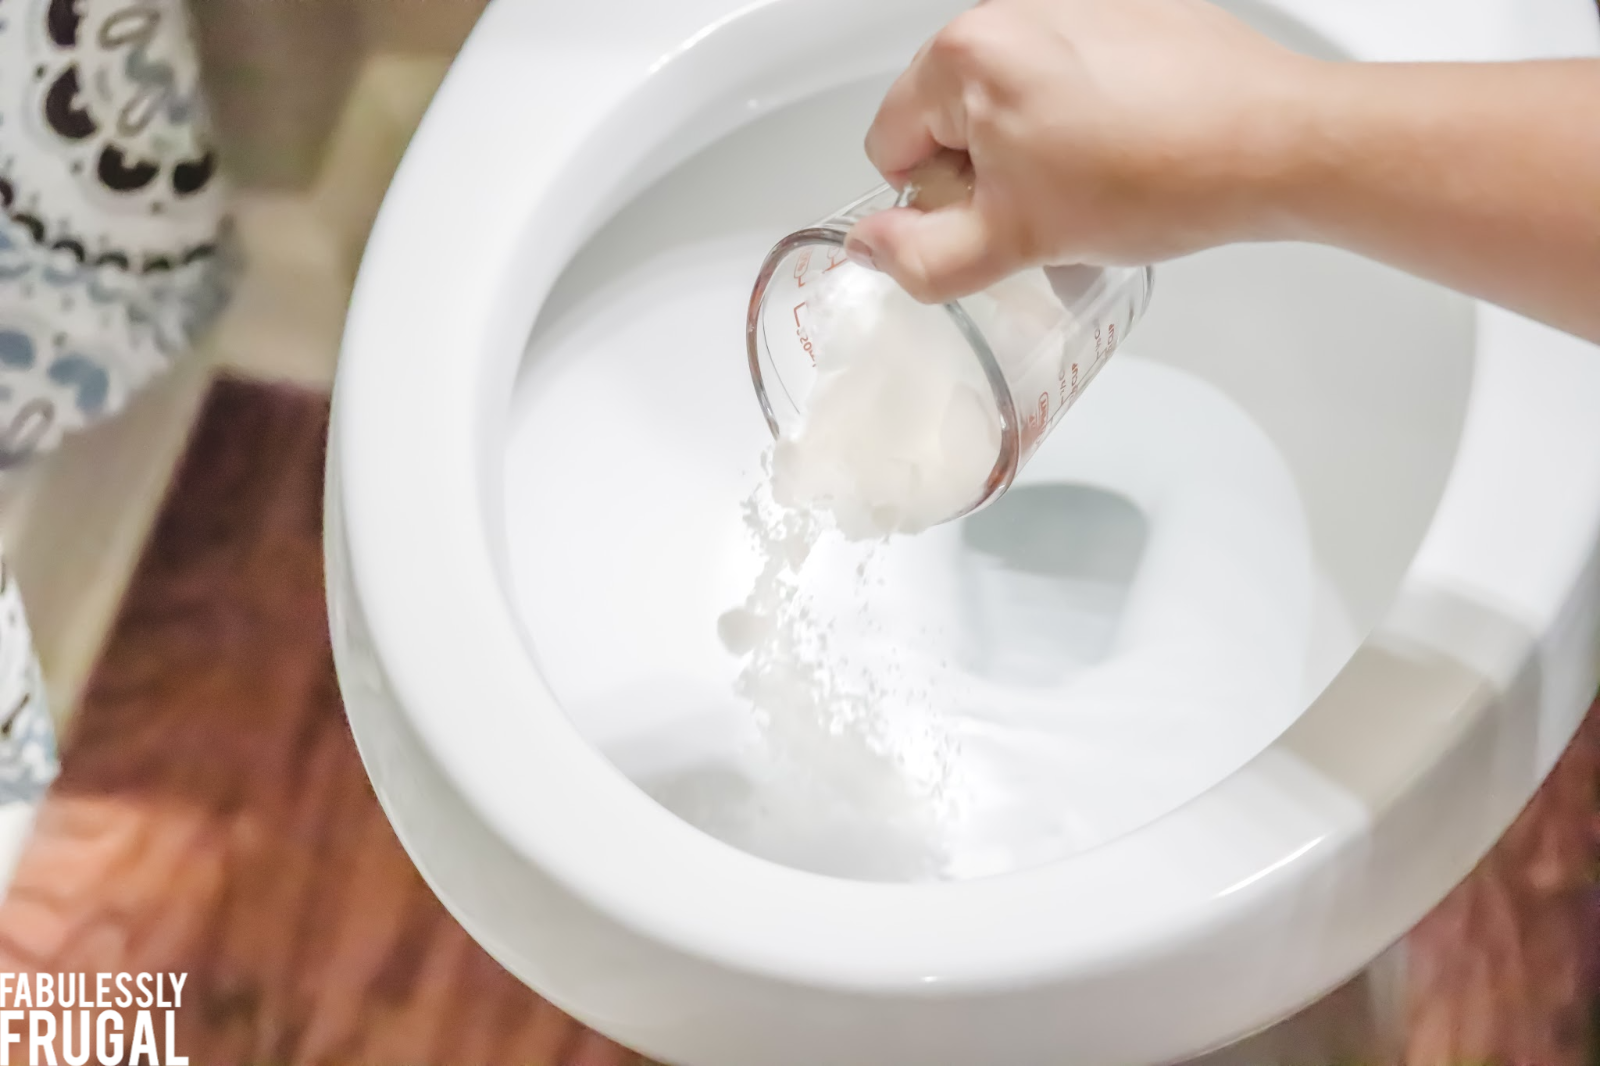 Pouring baking soda into toilet